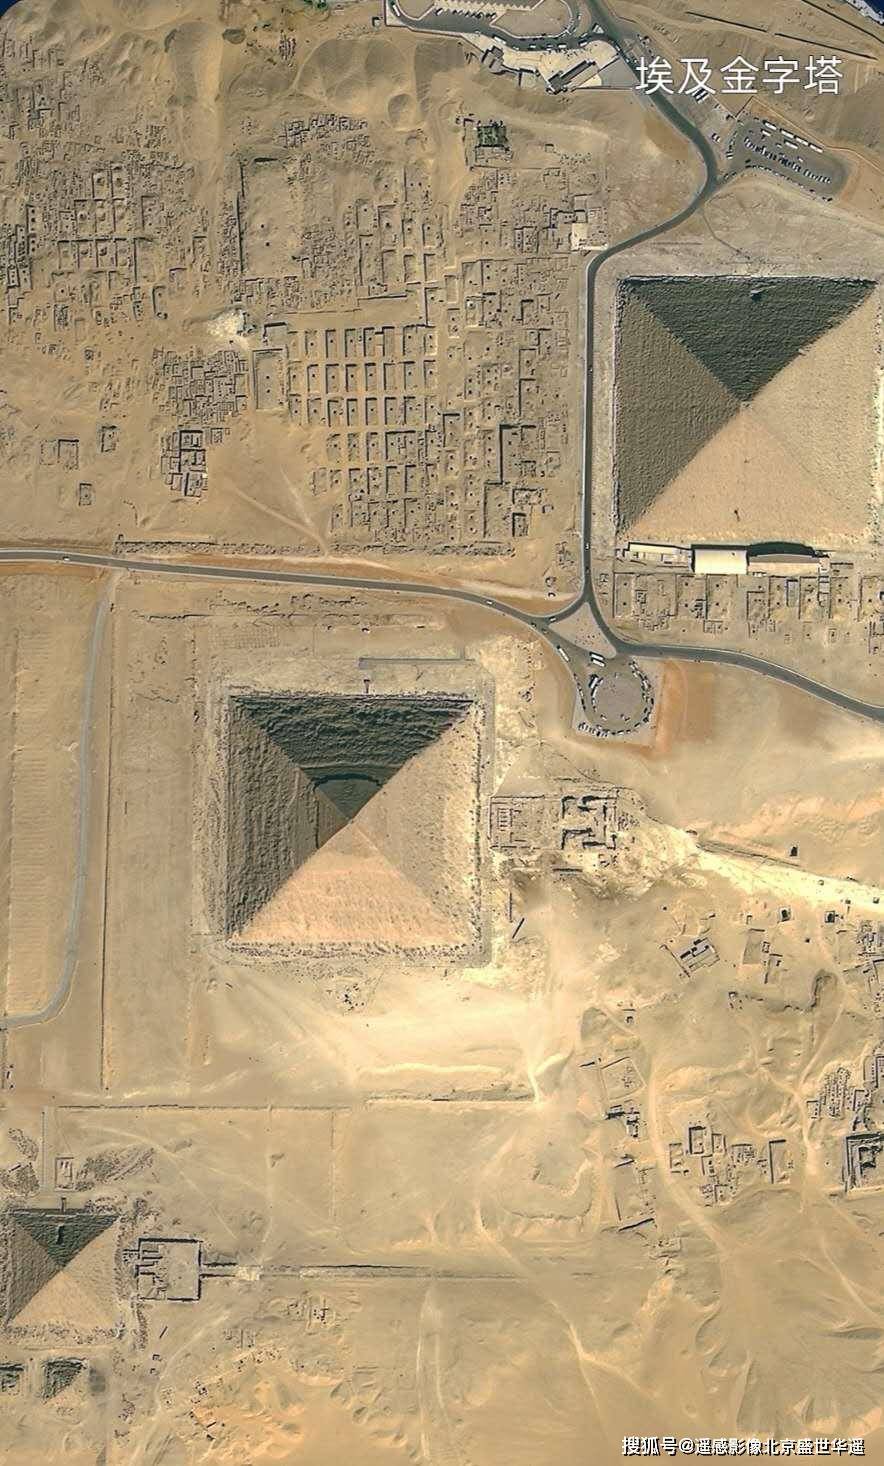 埃及金字塔-高景一号拍摄返回搜狐,查看更多